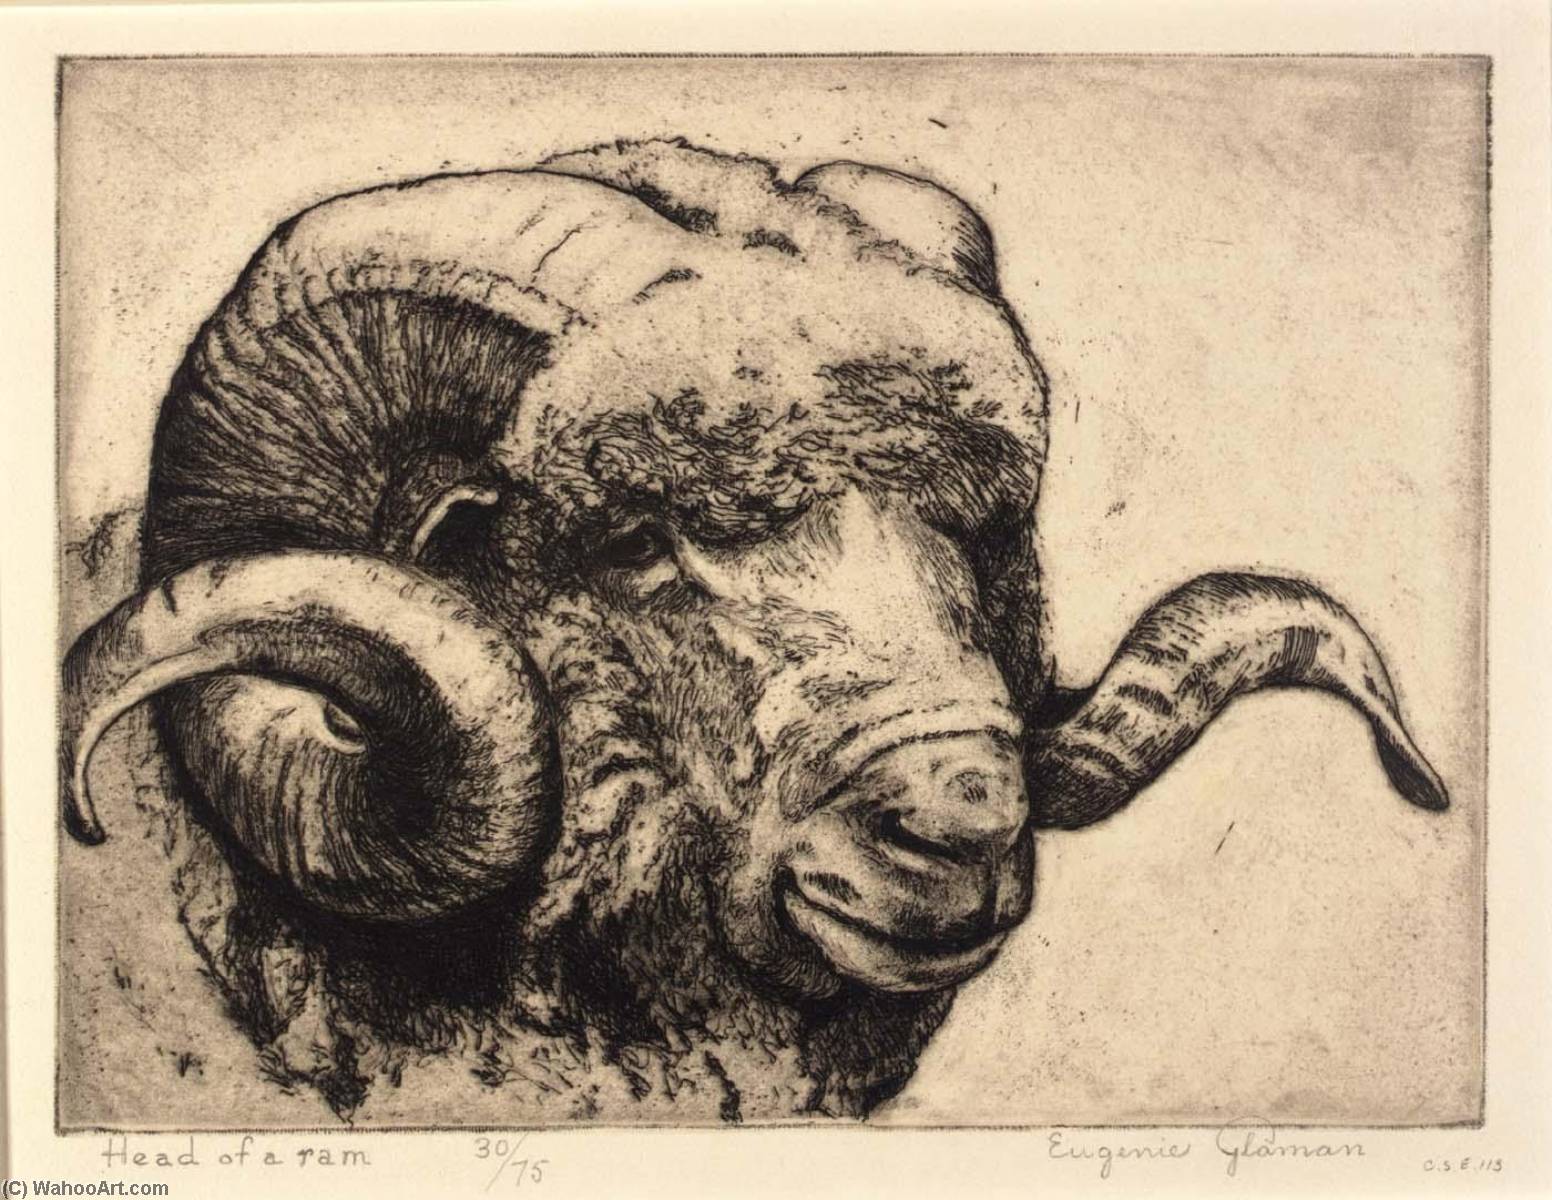 WikiOO.org - Enciclopedia of Fine Arts - Pictura, lucrări de artă Eugenie Fish Glaman - Head of a Ram